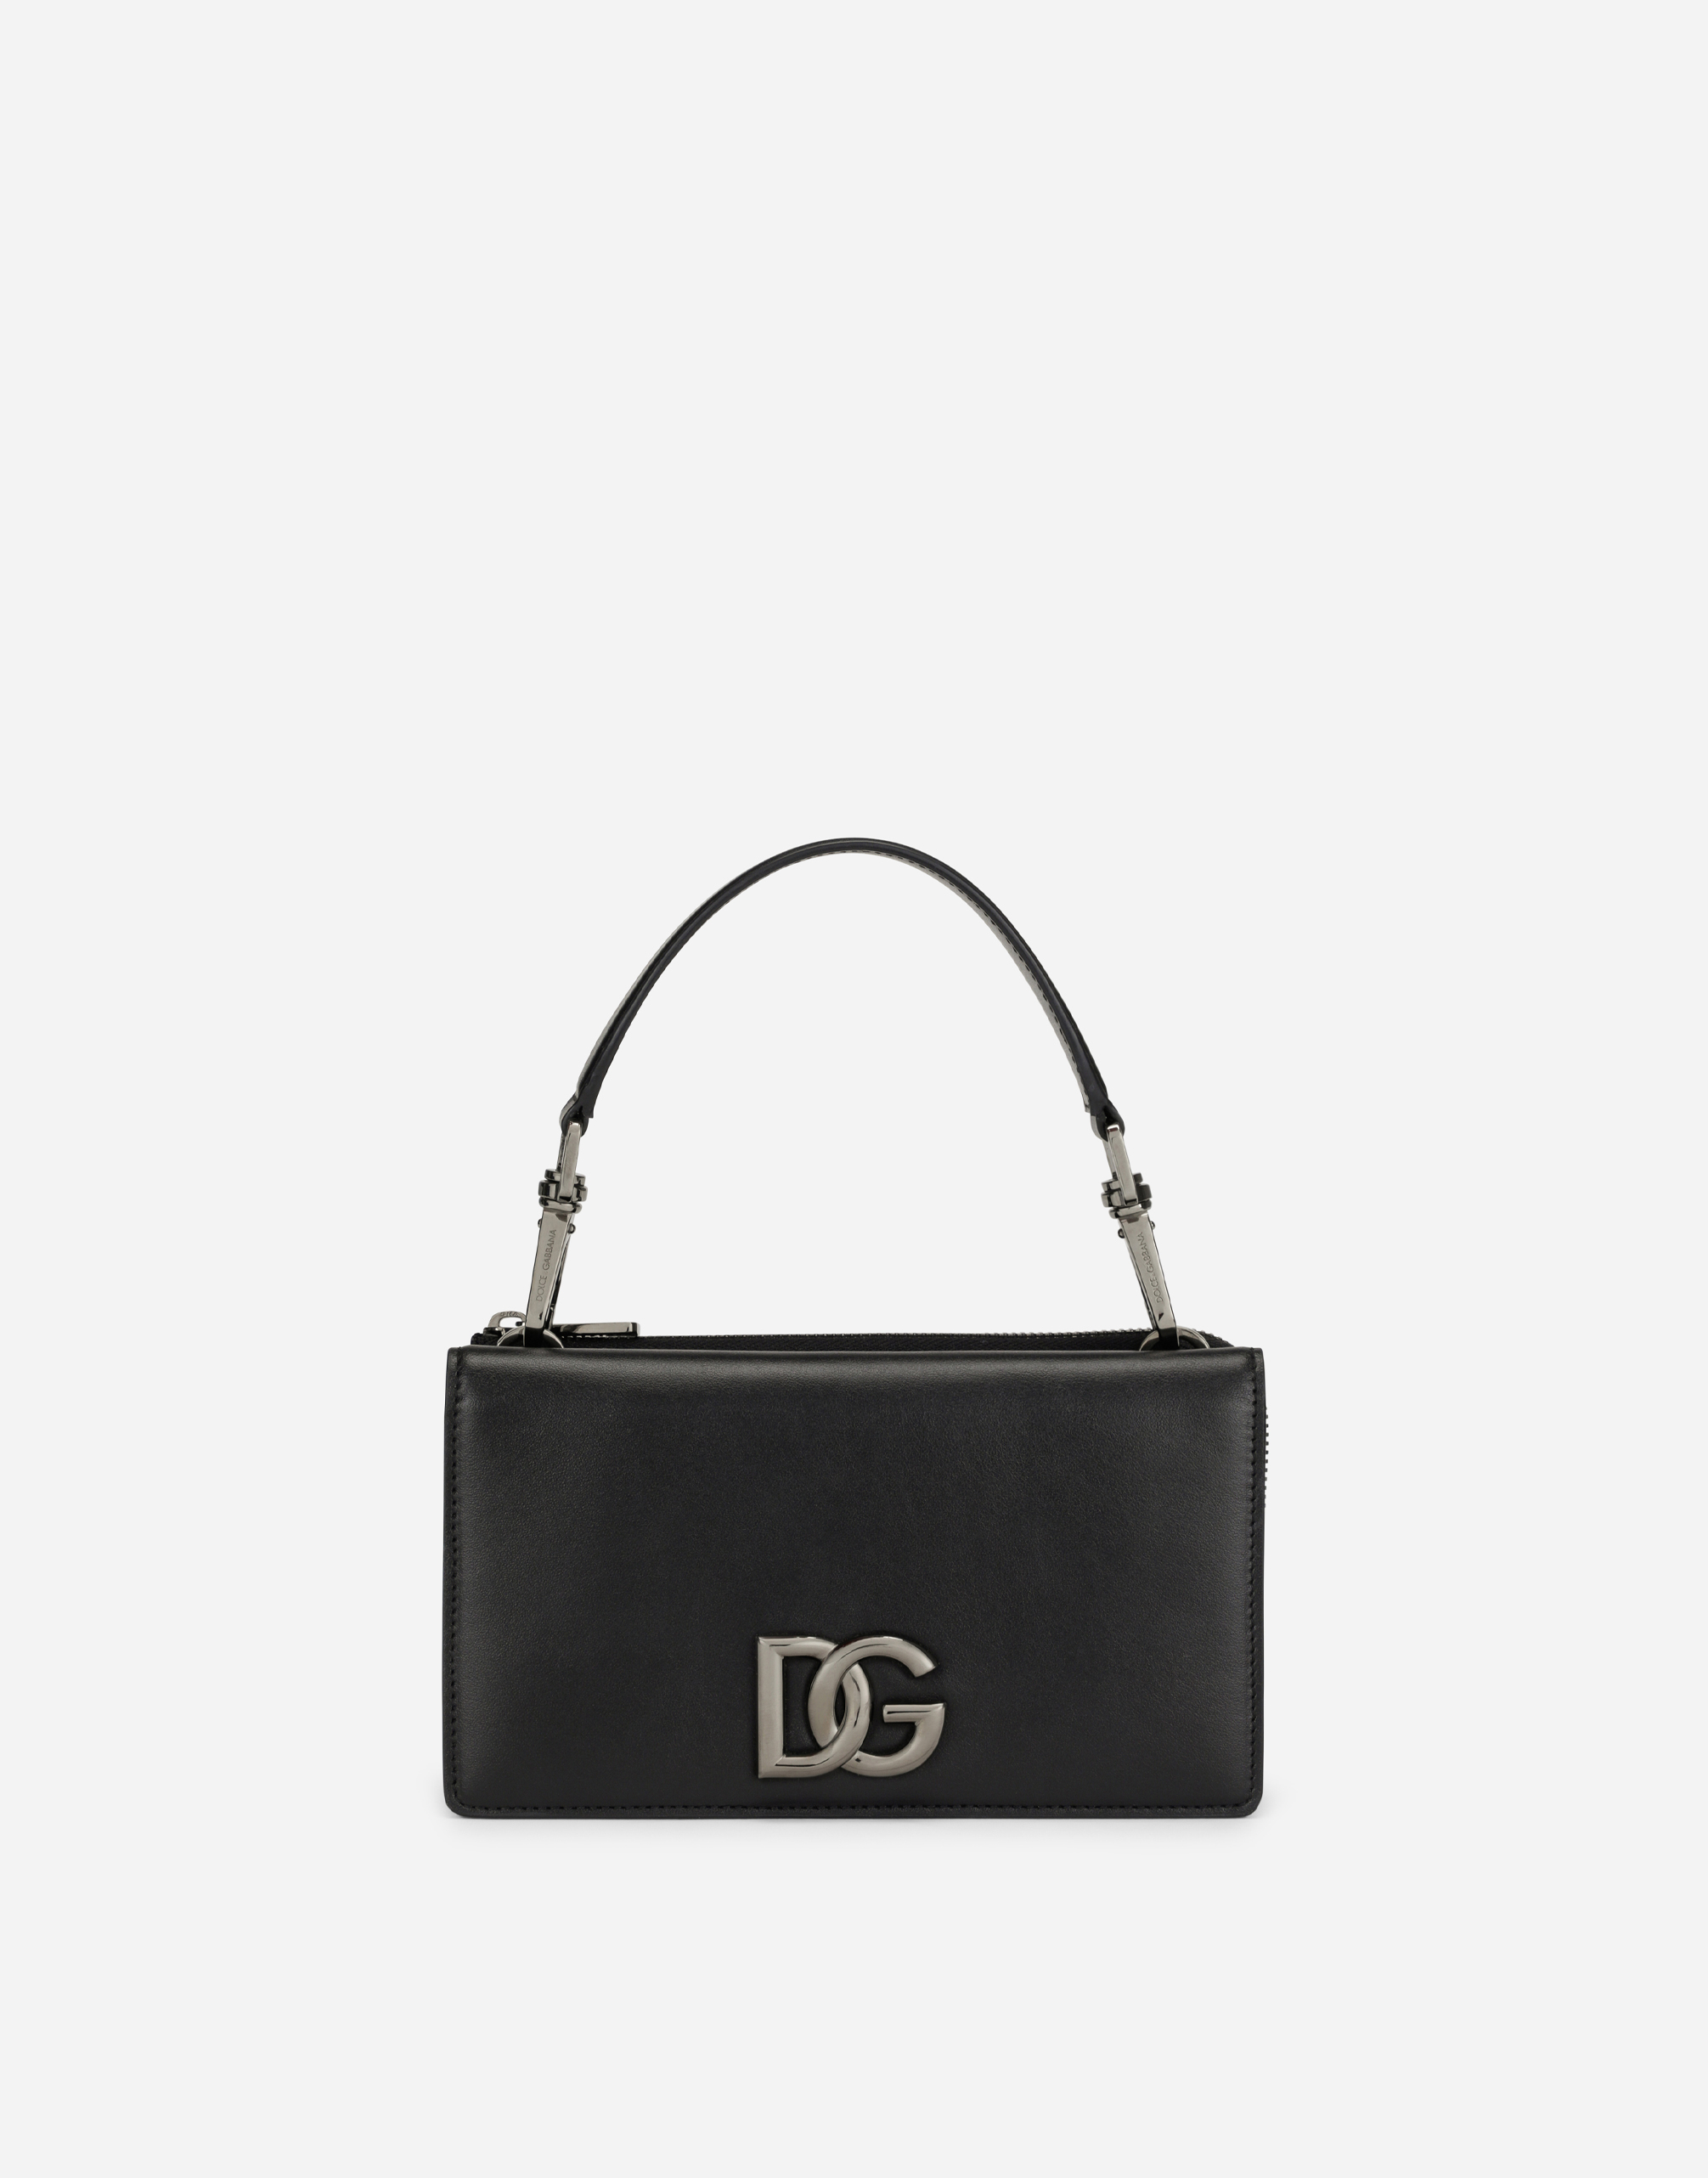 Mini handbag with strap in Black